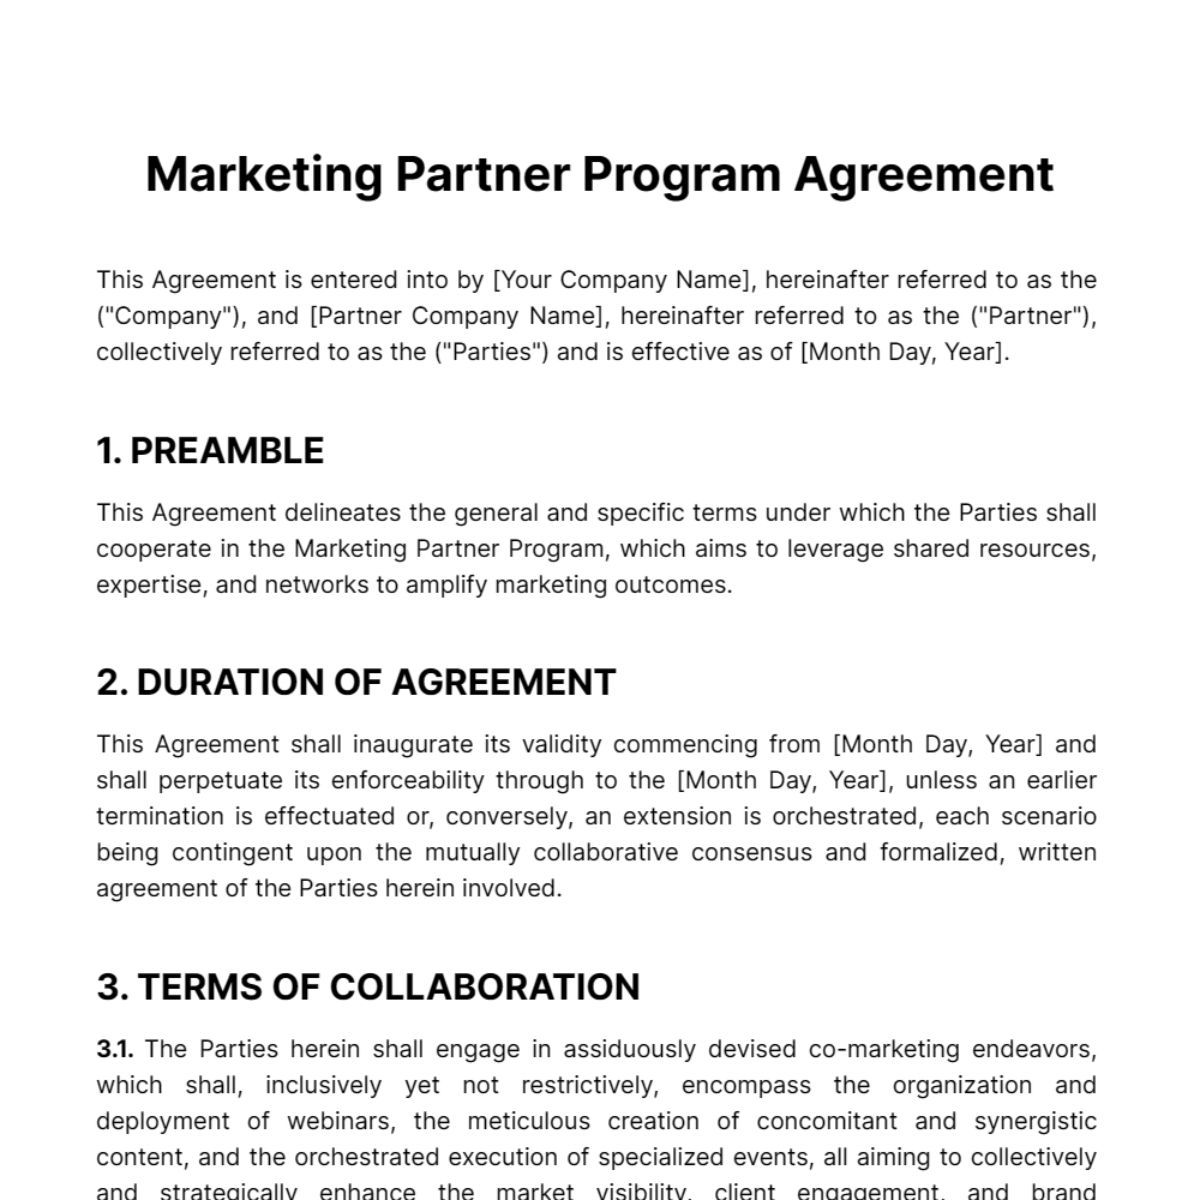 Marketing Partner Program Agreement Template